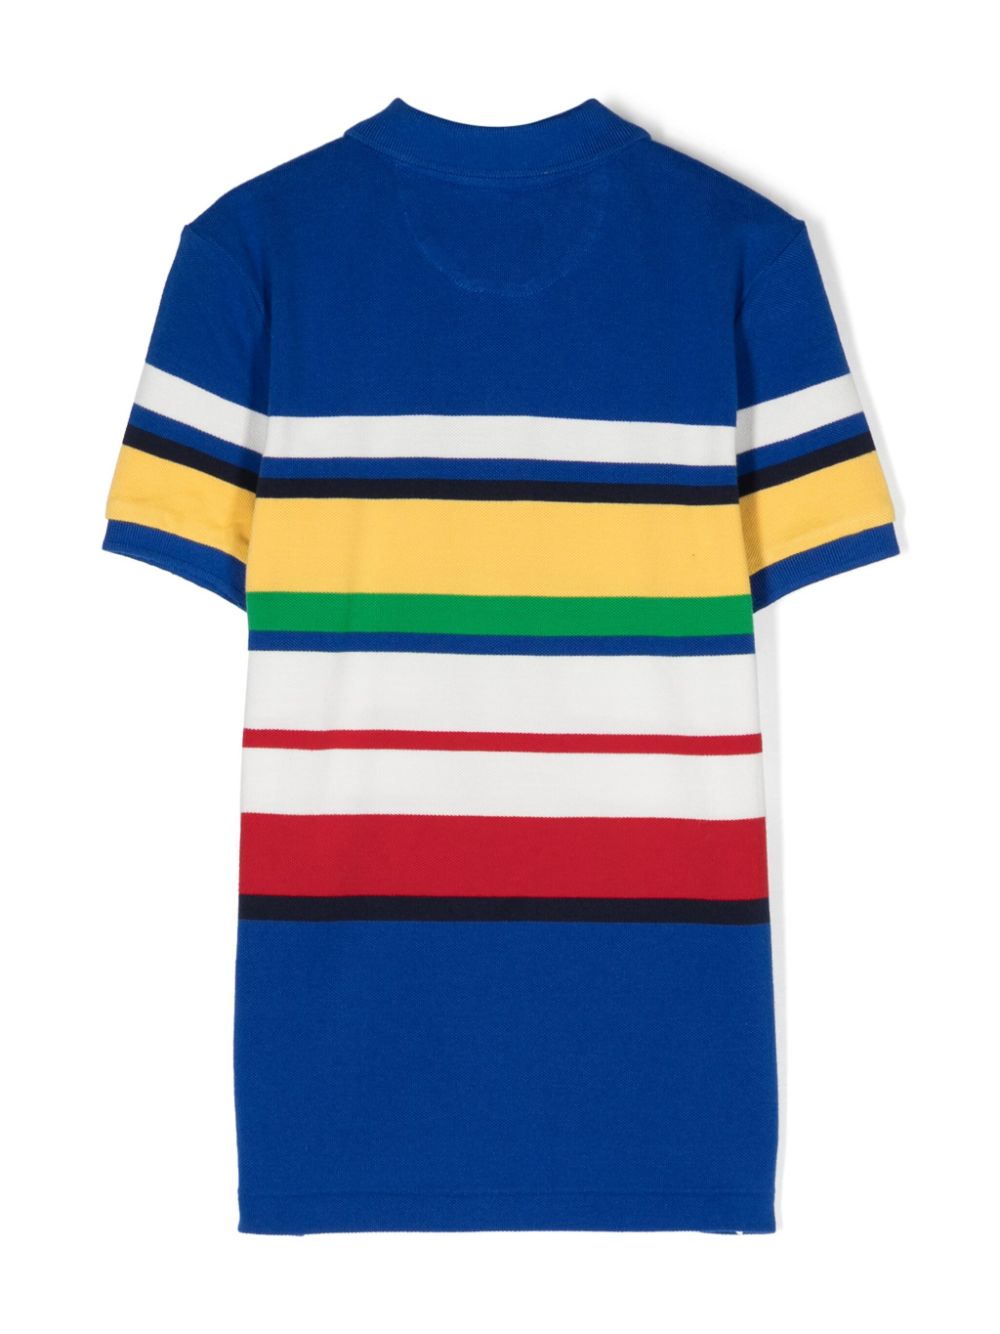 Blue striped polo shirt for boys